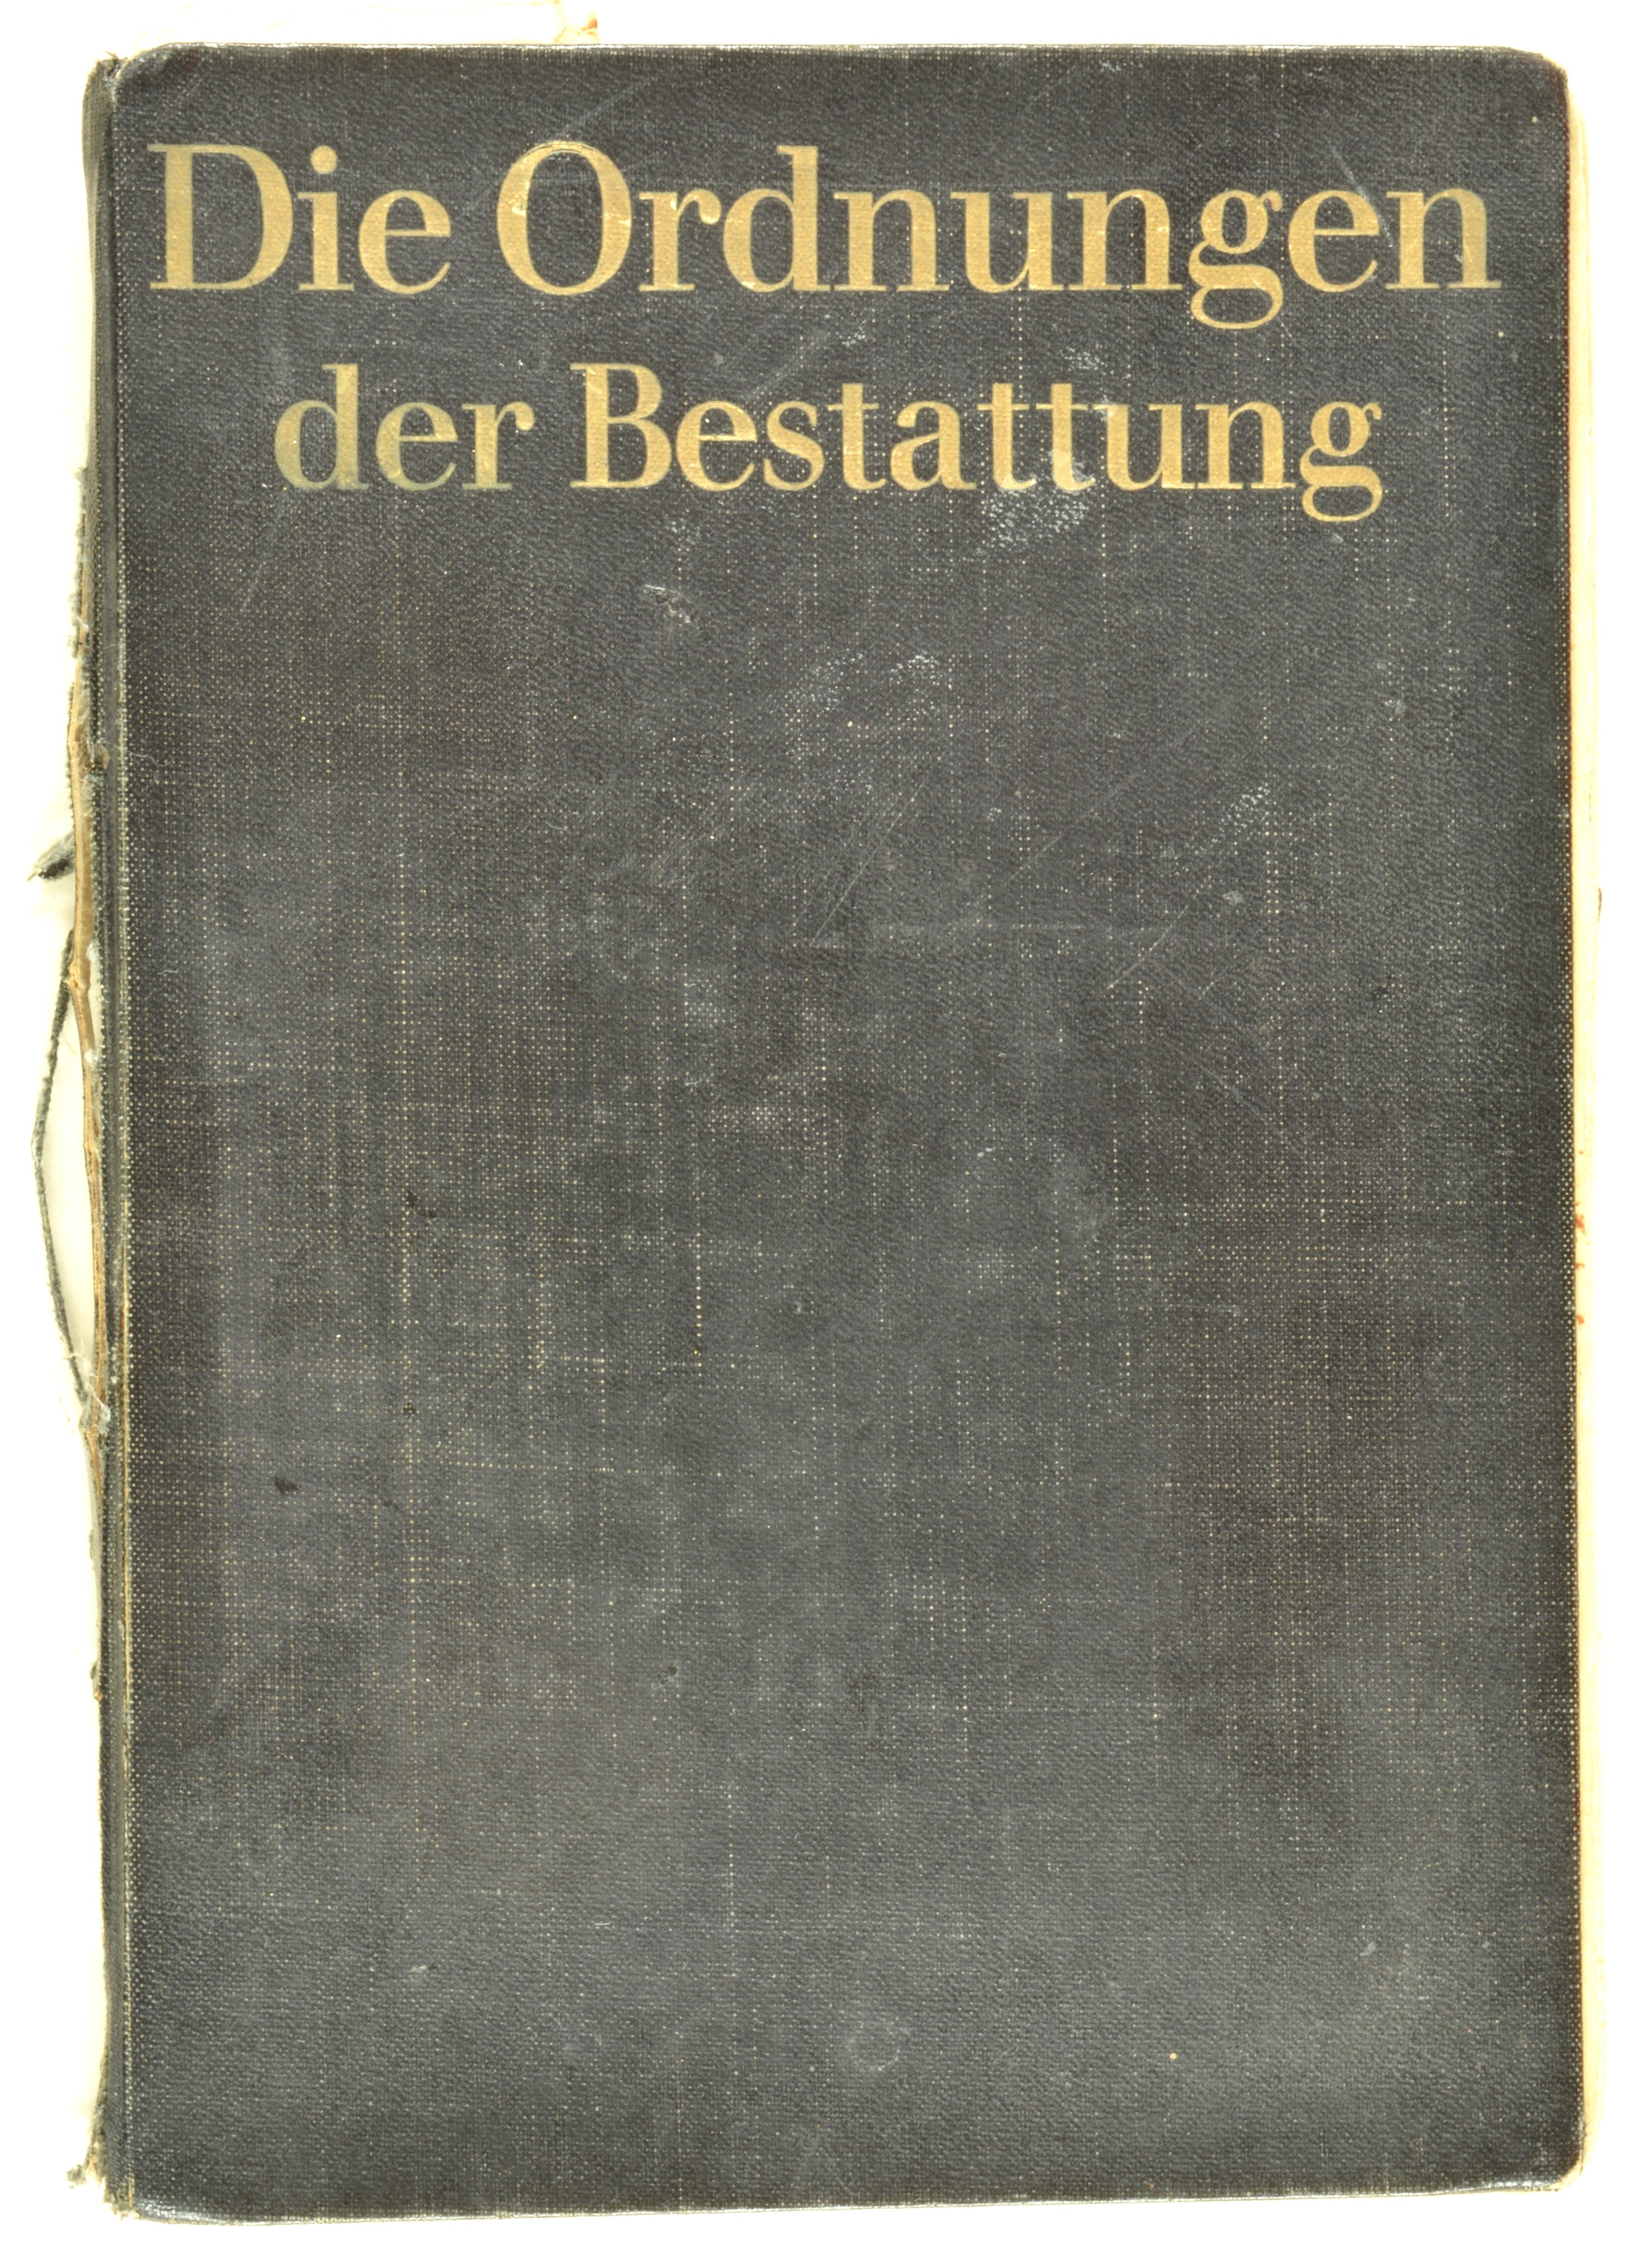 Buch: Die Ordnungen der Bestattung (DDR Geschichtsmuseum im Dokumentationszentrum Perleberg CC BY-SA)